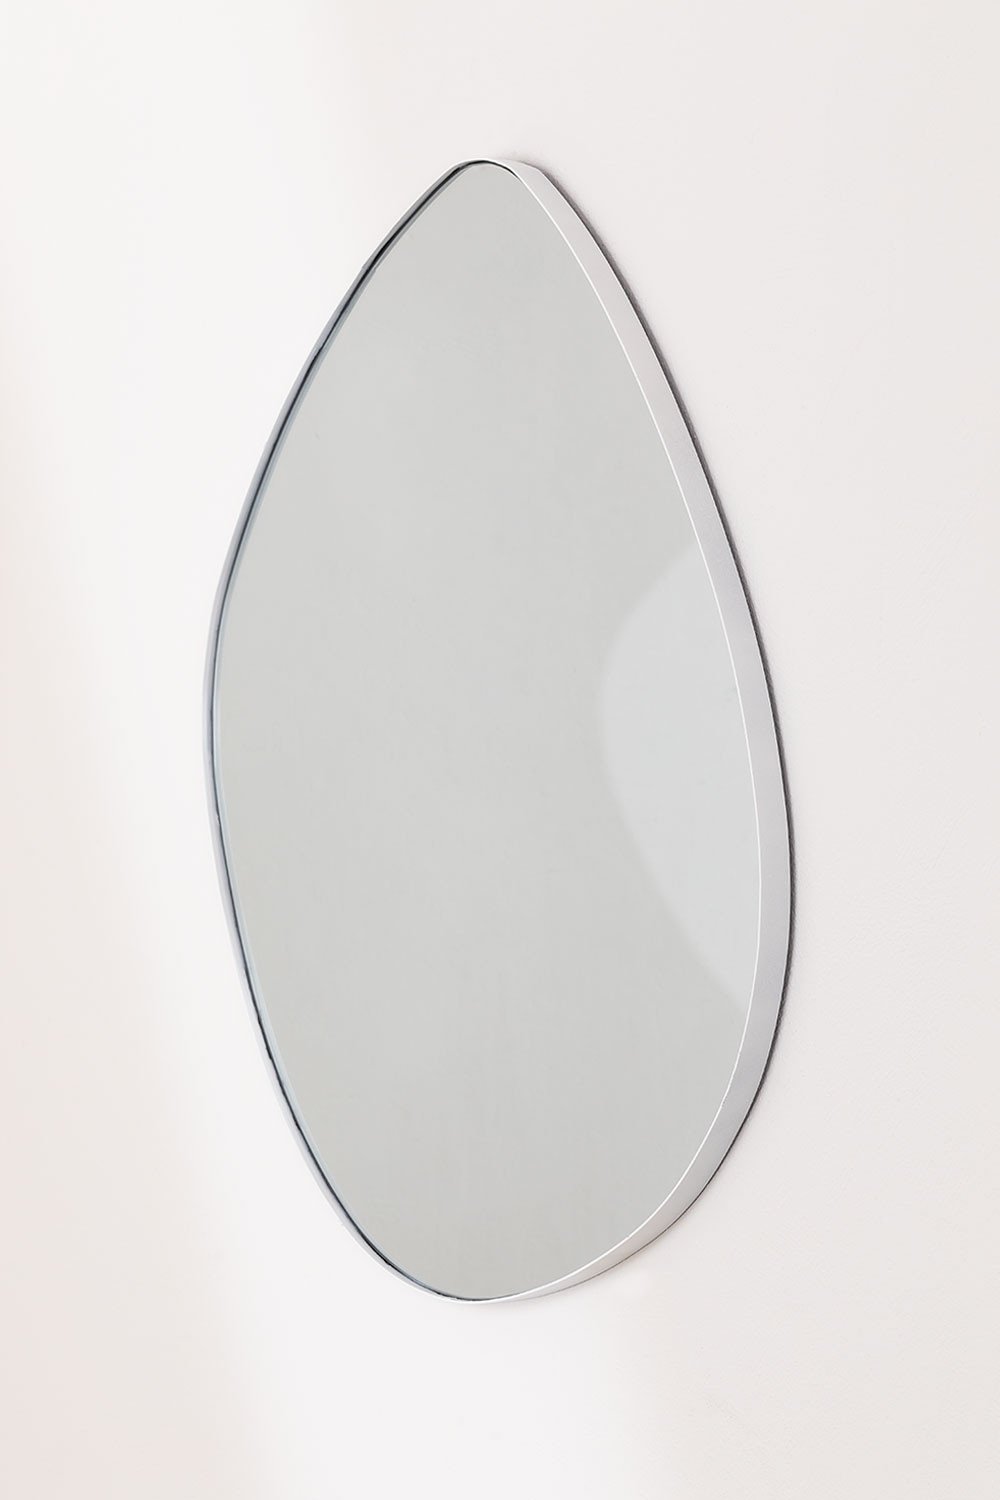 Specchio da parete in metallo (67x60 cm) Astrid, immagine della galleria 1